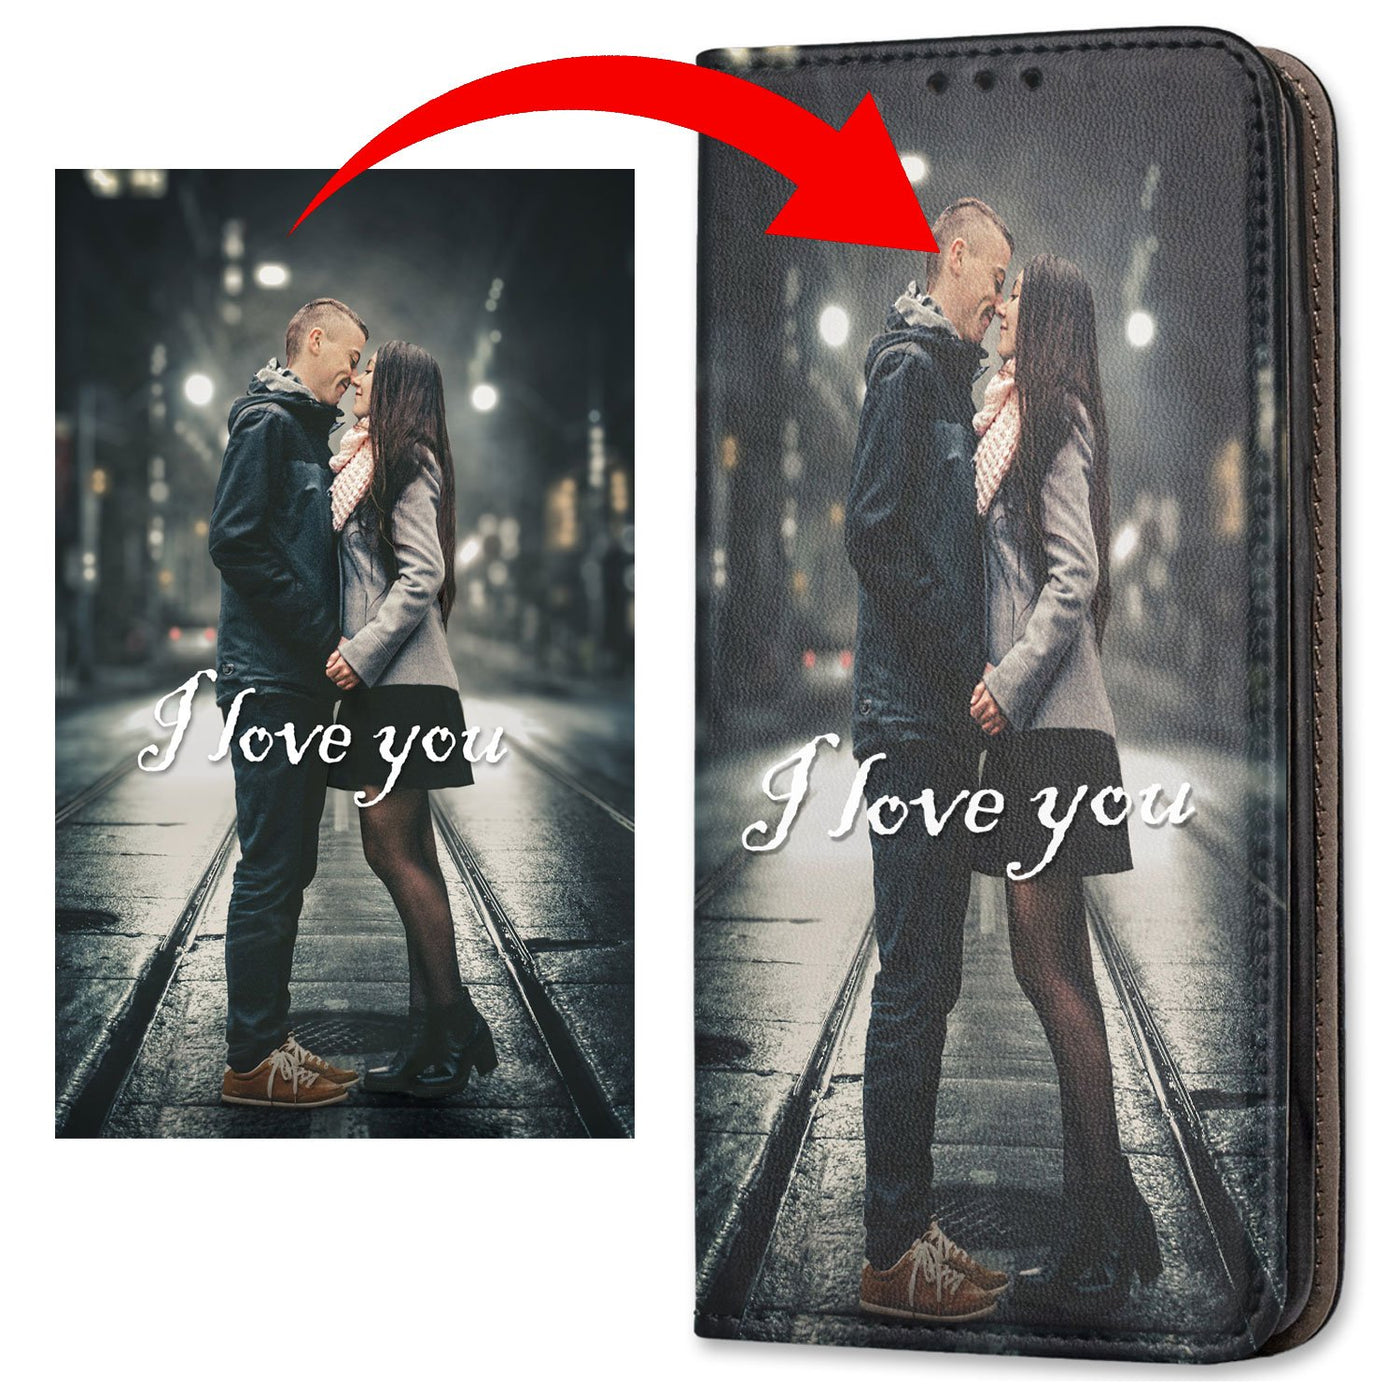 Personalisierte Handyhülle für Samsung Galaxy A6 Plus 2018 Hülle mit eigenem Design Bild Motiv Smart Magnetic Klapphülle